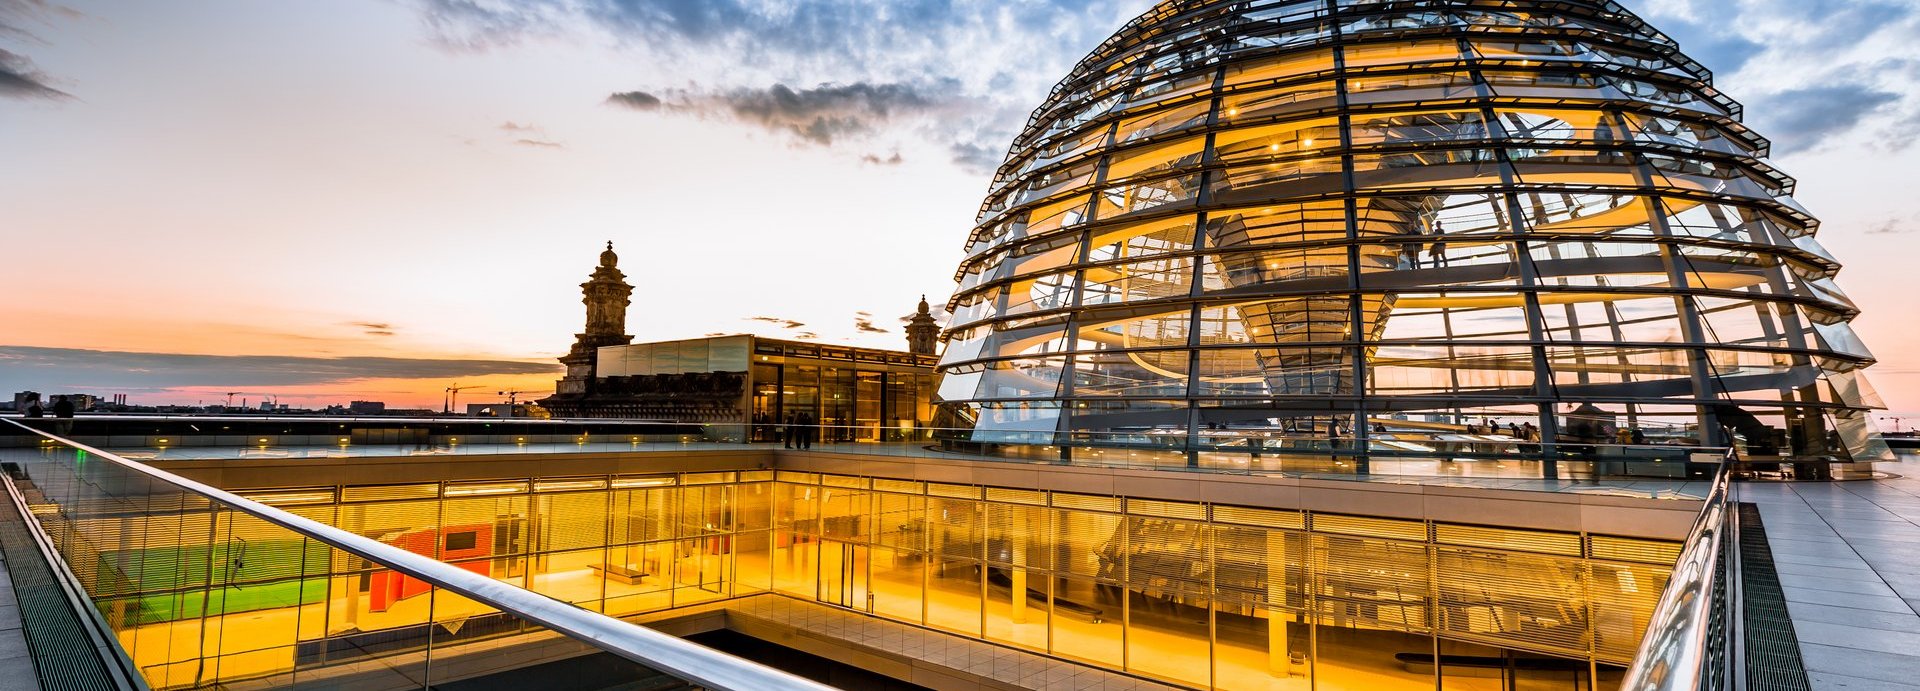 Gelb beleuchtete Kuppel und innere Gänge des Bundestags vor dunkelblauem wolkigem Himmel